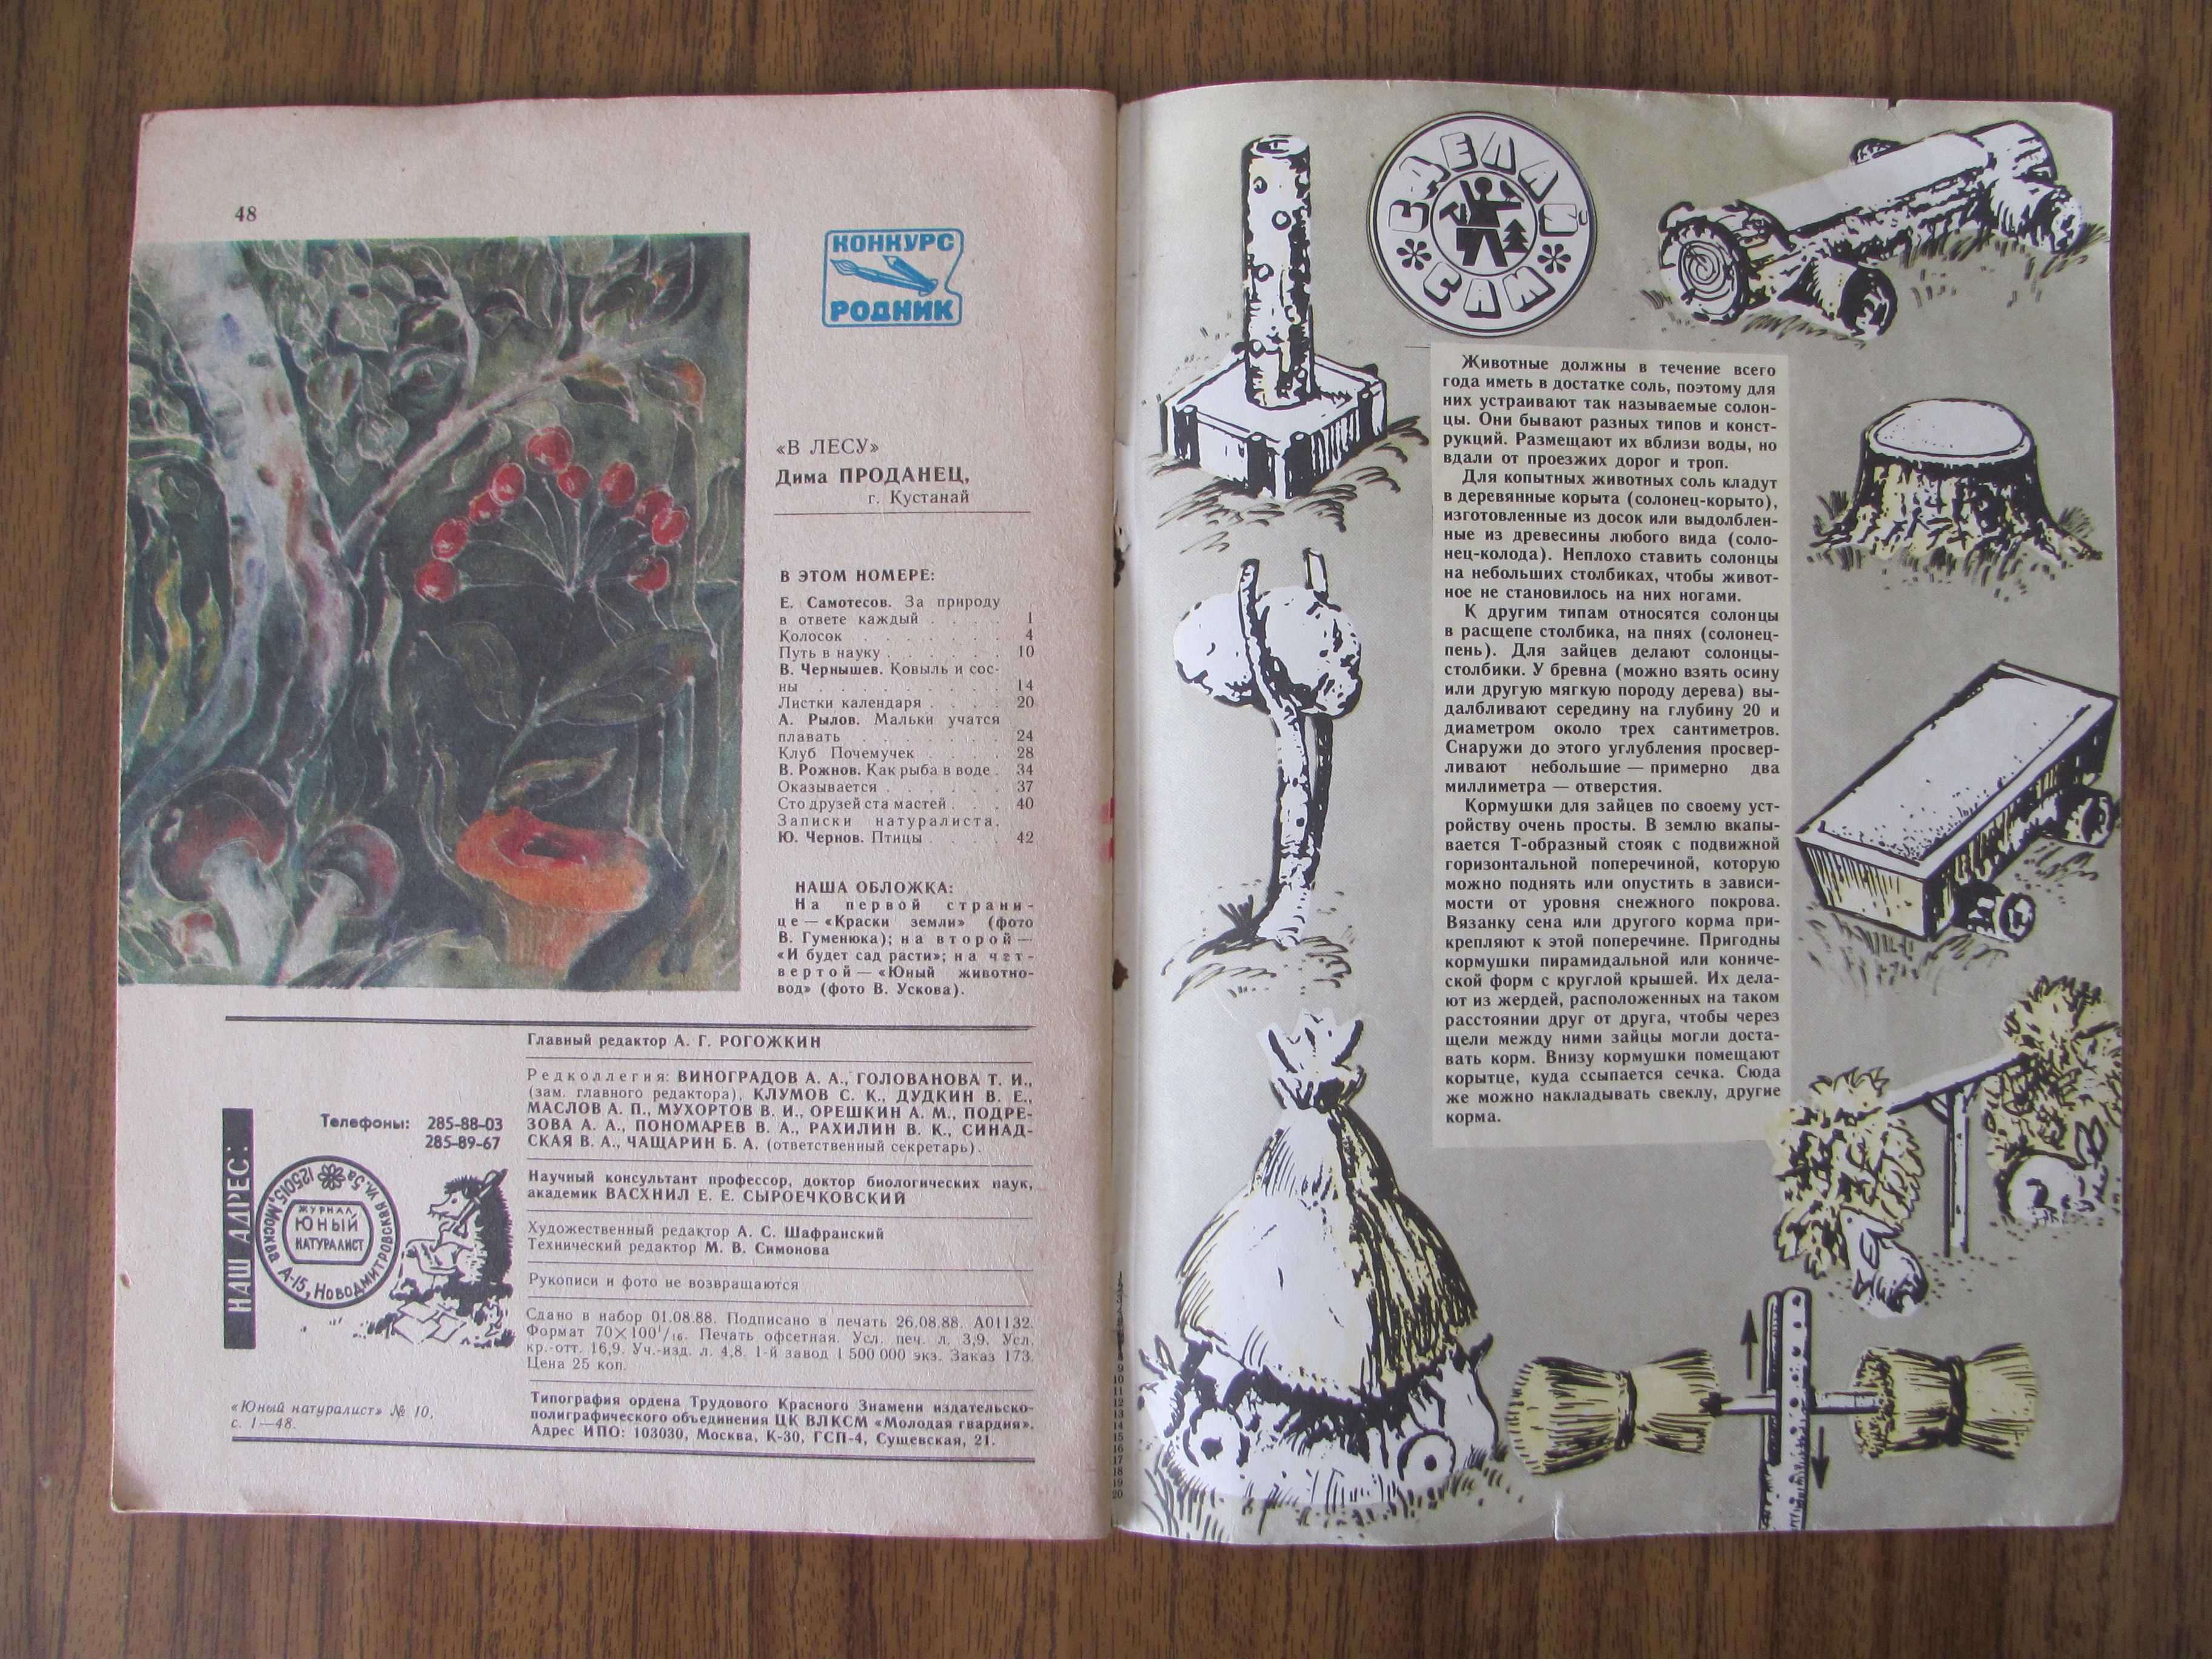 Журнал из СССР Юный натуралист 1988 г выпуск № 10 - любимый с детства!